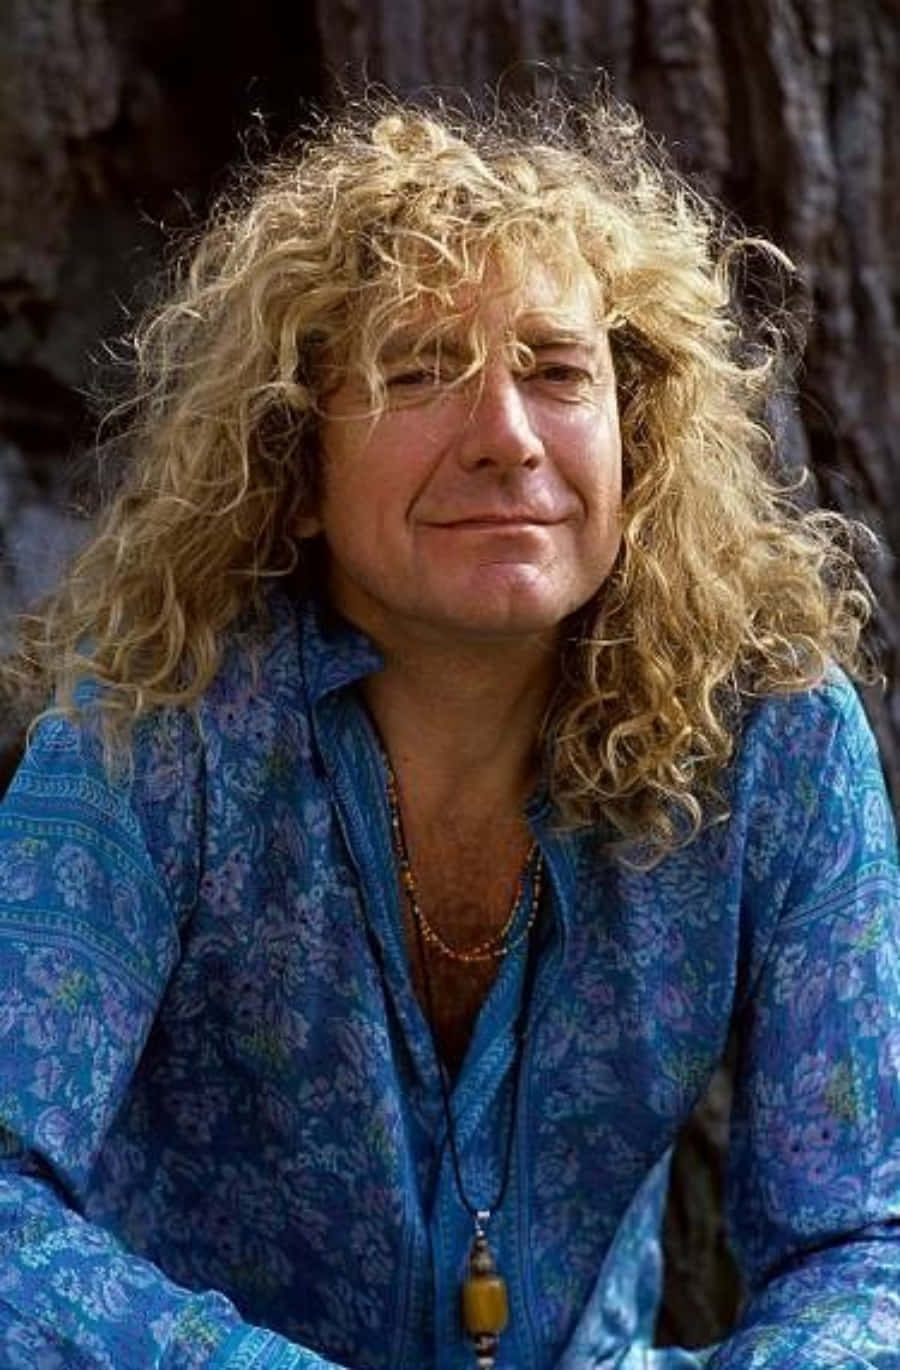 Legendariskeled Zeppelin-frontmannen Robert Plant